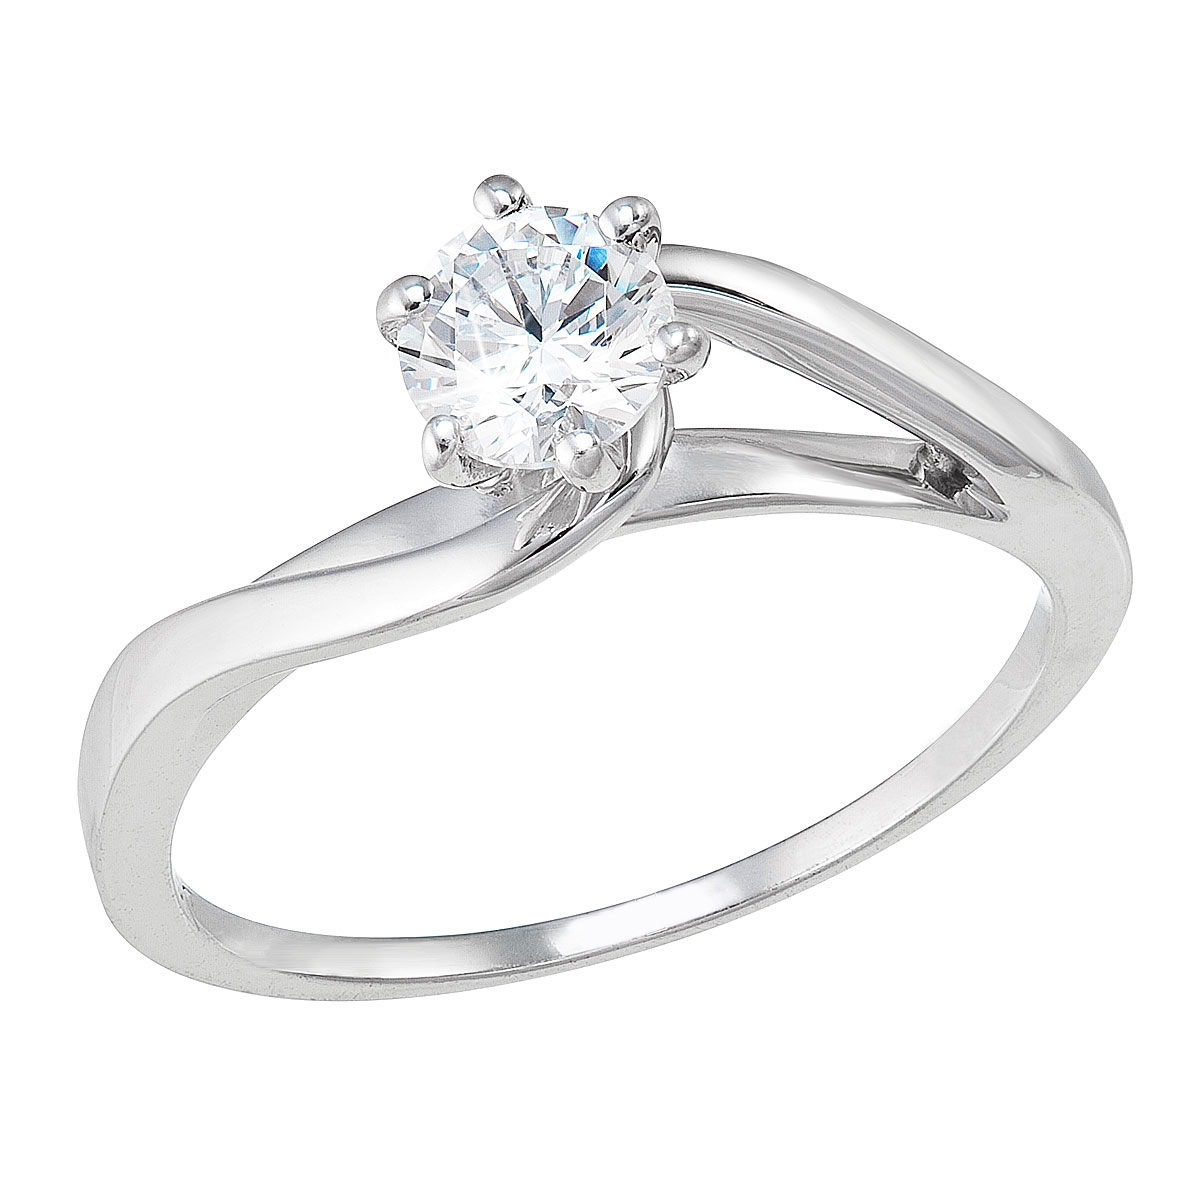 Evolution Group Stříbrný prsten s jedním zirkonem bílý 885015.1